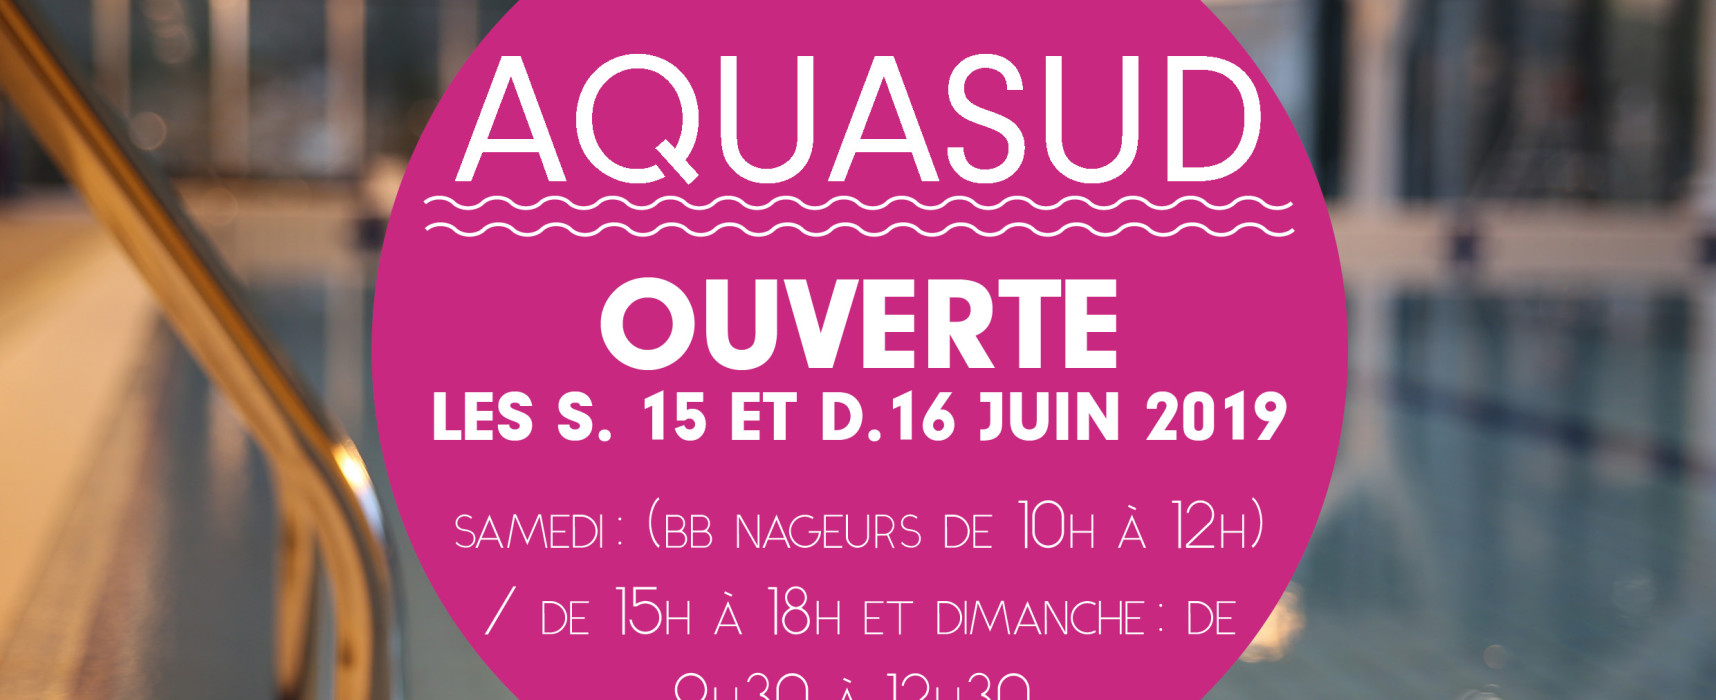 AQUASUD – ouverture le samedi 15 et dimanche 16 juin 2019